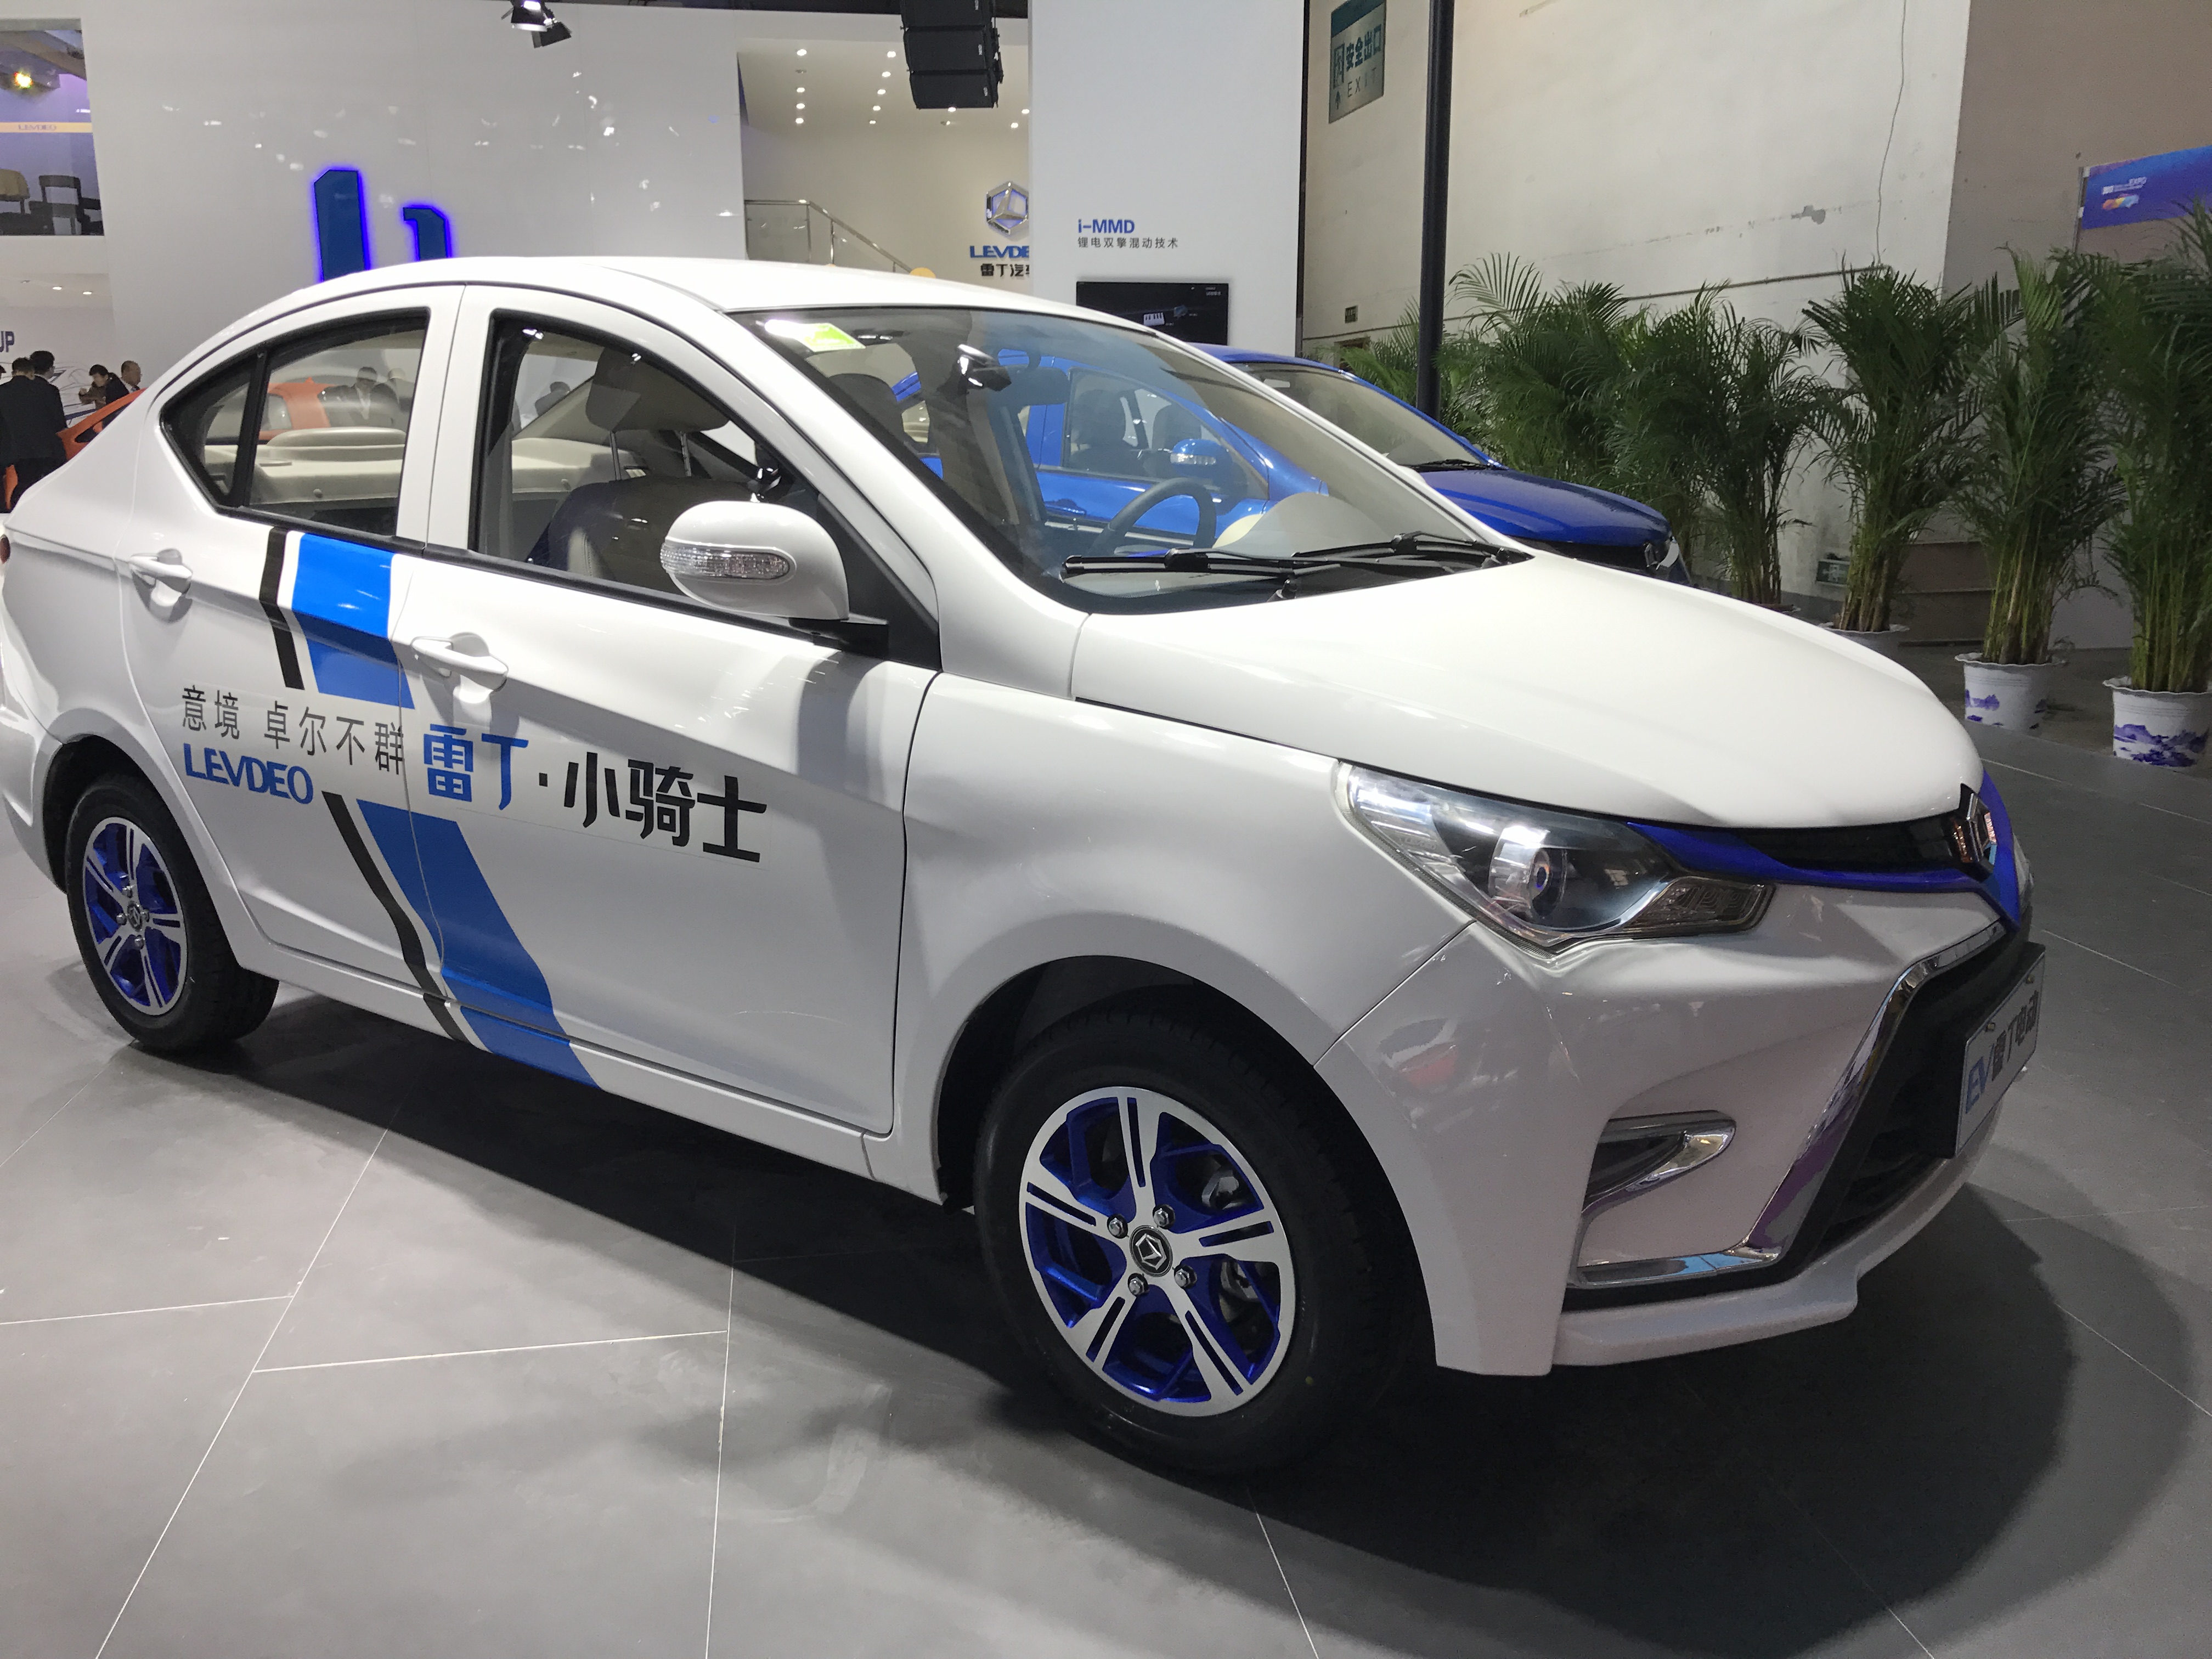 最近一次是在山东·济南国际新能源汽车电动车展览会上,一堵了雷丁新